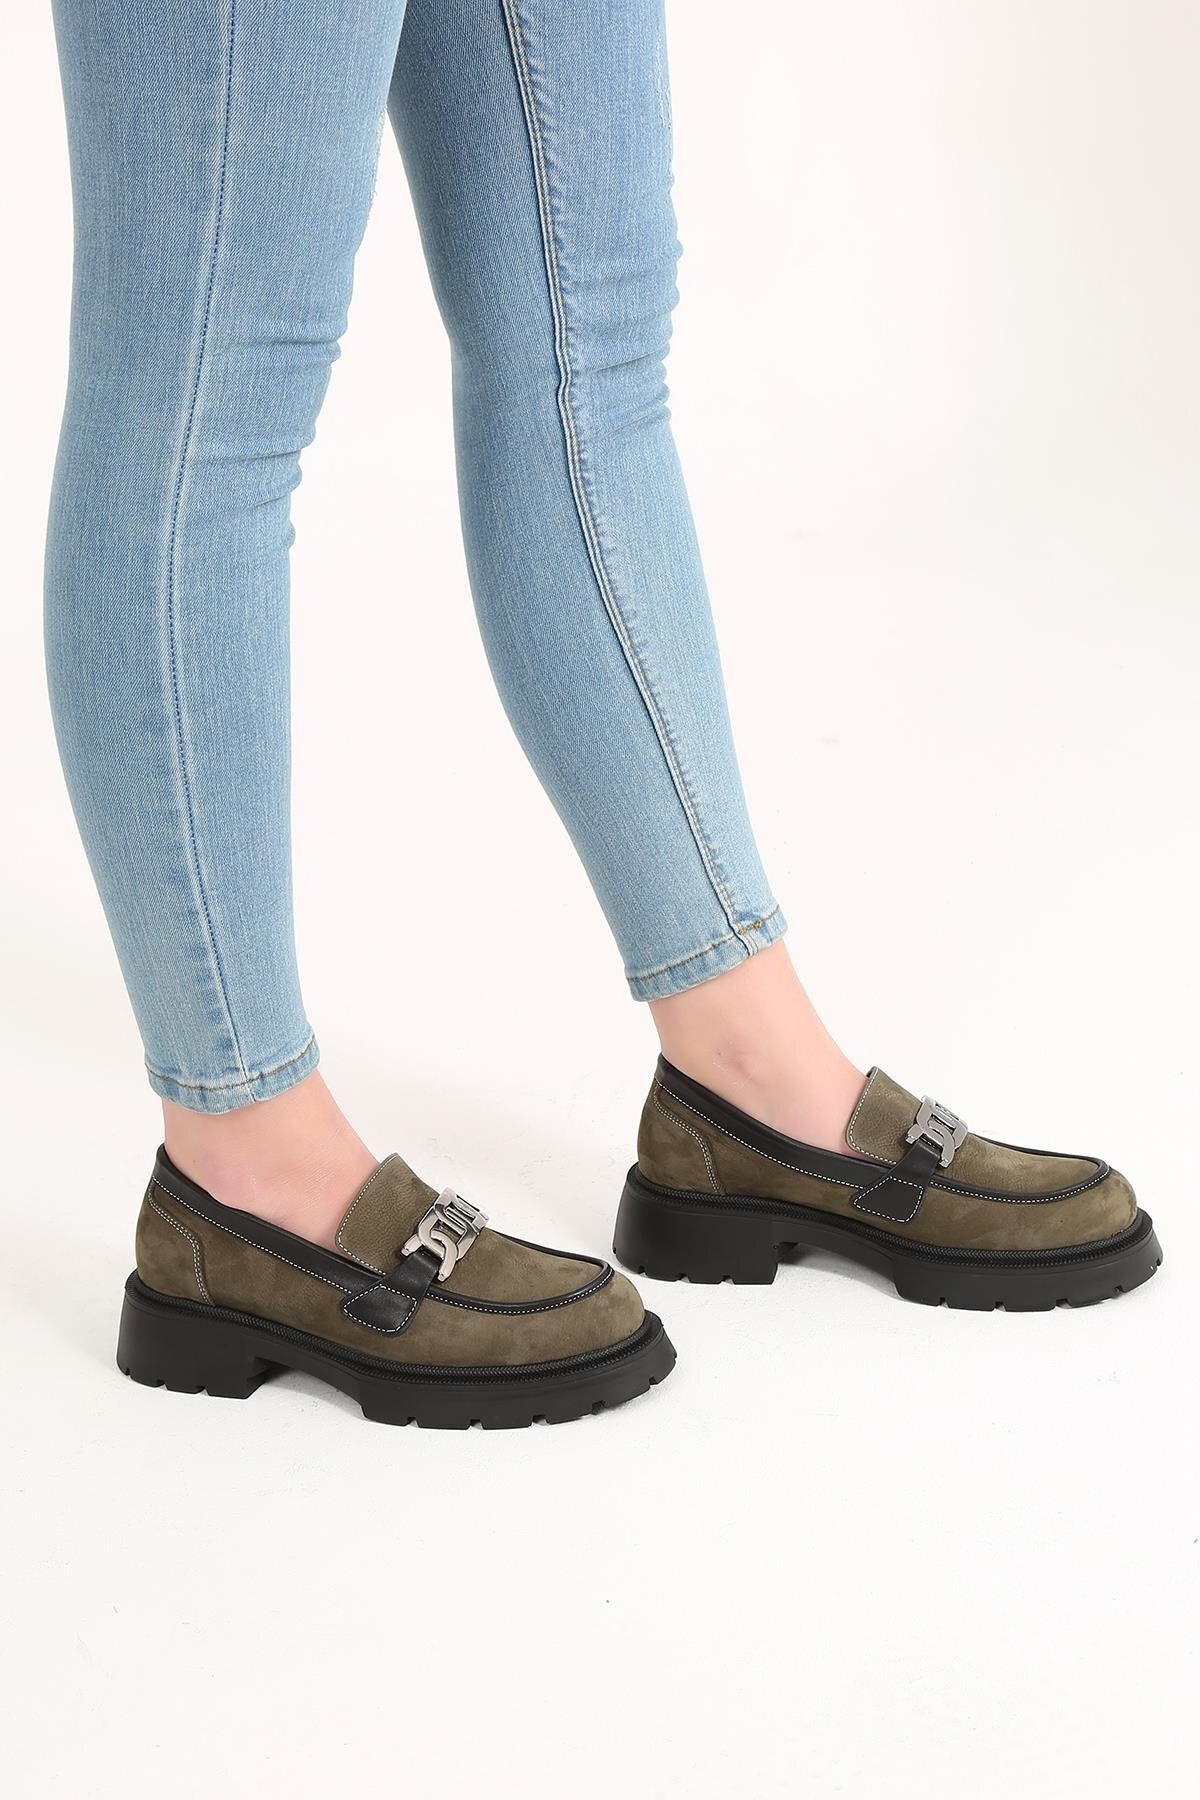 CassidoShoes Haki Nubuk 002-1070 Kadın Casual Ayakkabı